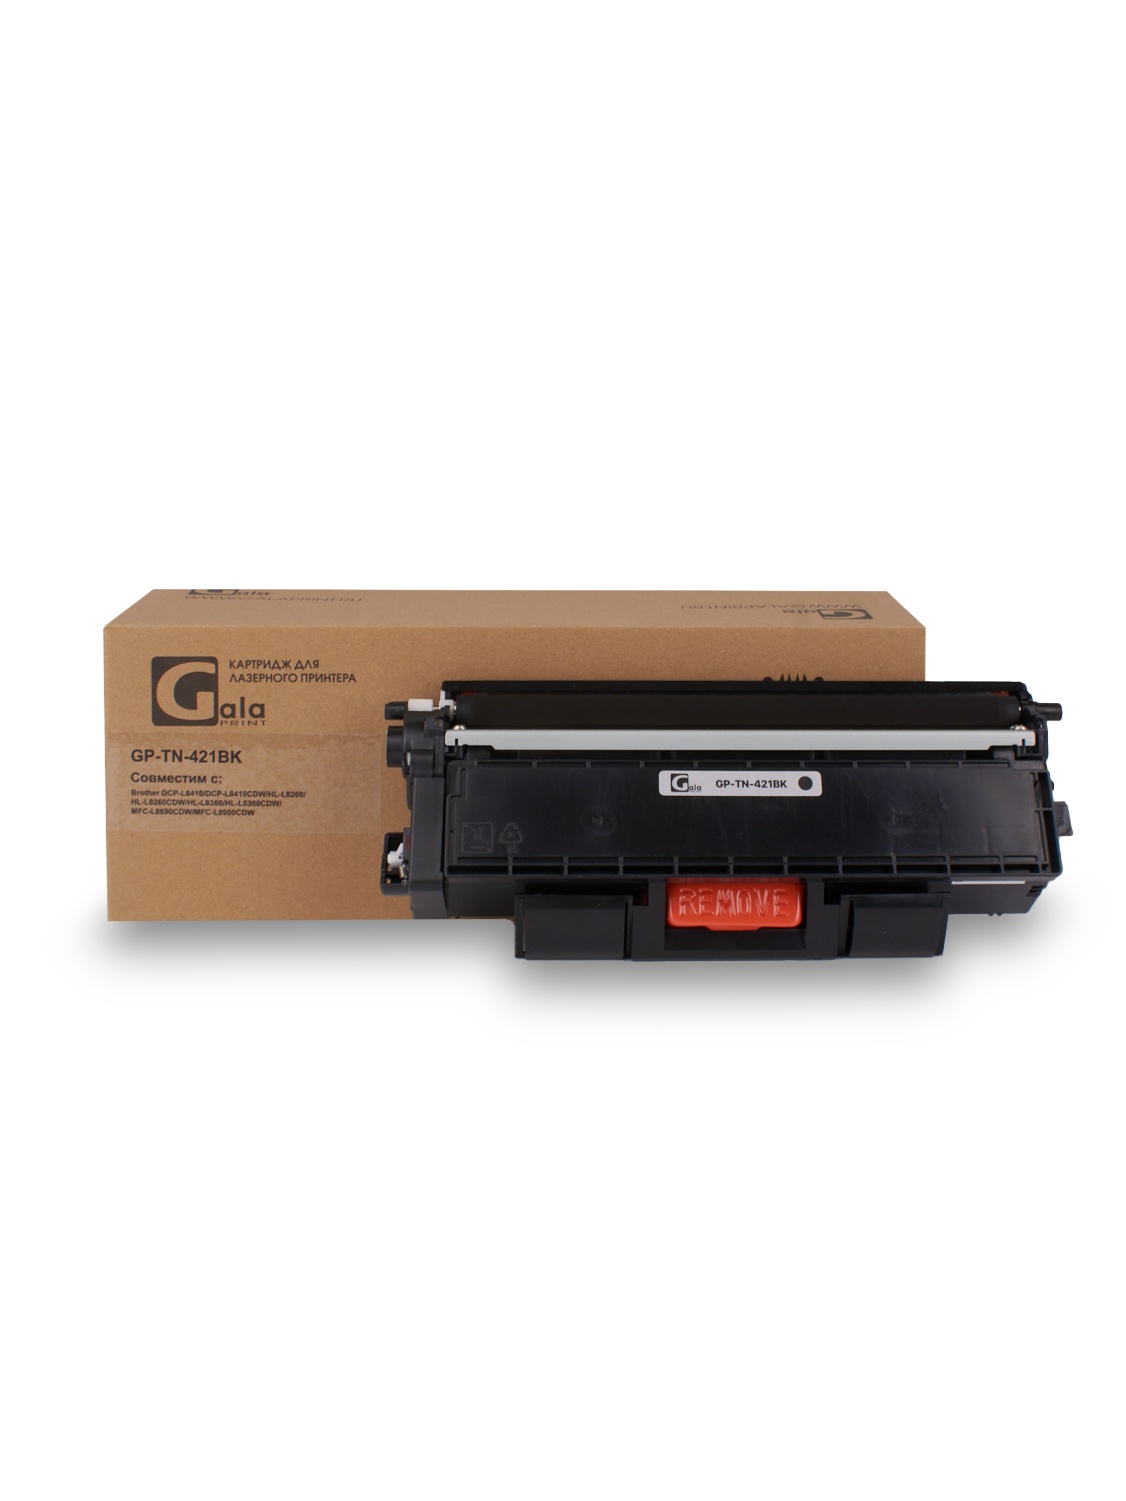 Картридж GP-TN-421BK для принтеров Brother DCP-L8410/DCP-L8410CDW/HL-L8260/HL-L8260CDW/HL-L8360/HL-L8360CDW/MFC-L8690CDW/MFC-L8900CDW Black 3000 копий GalaPrint